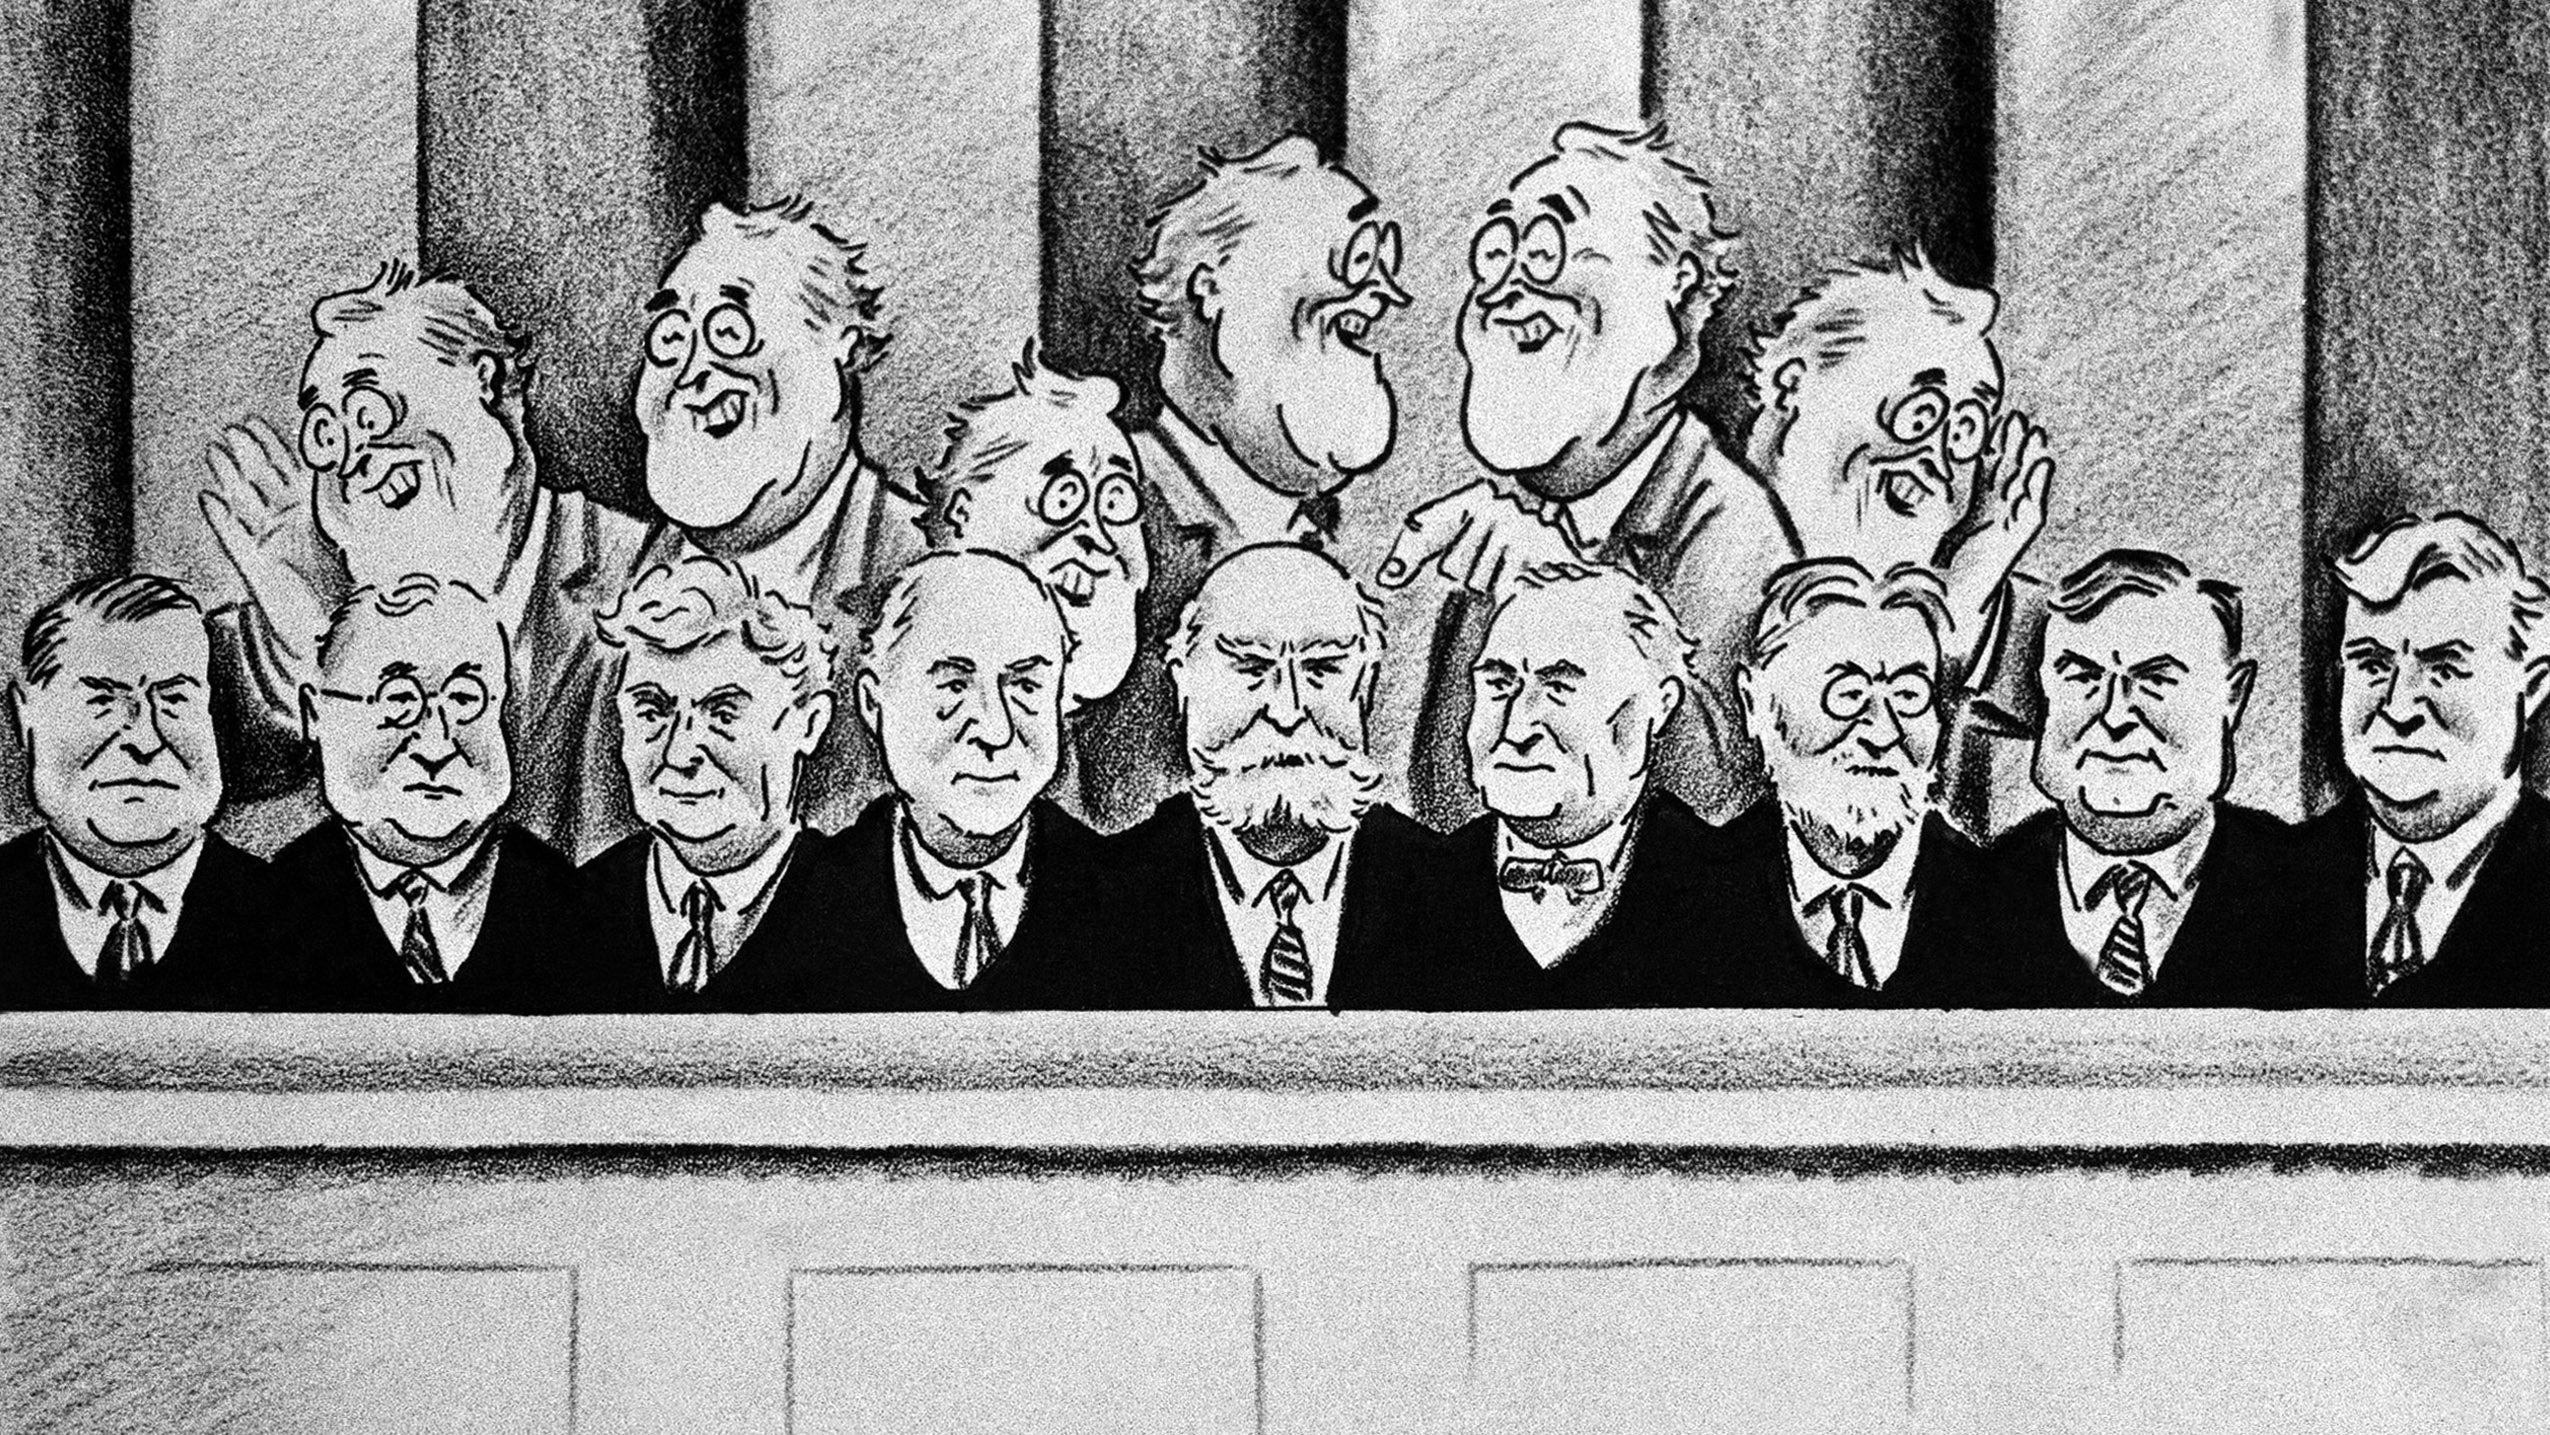 FDR SCOTUS editorial cartoon